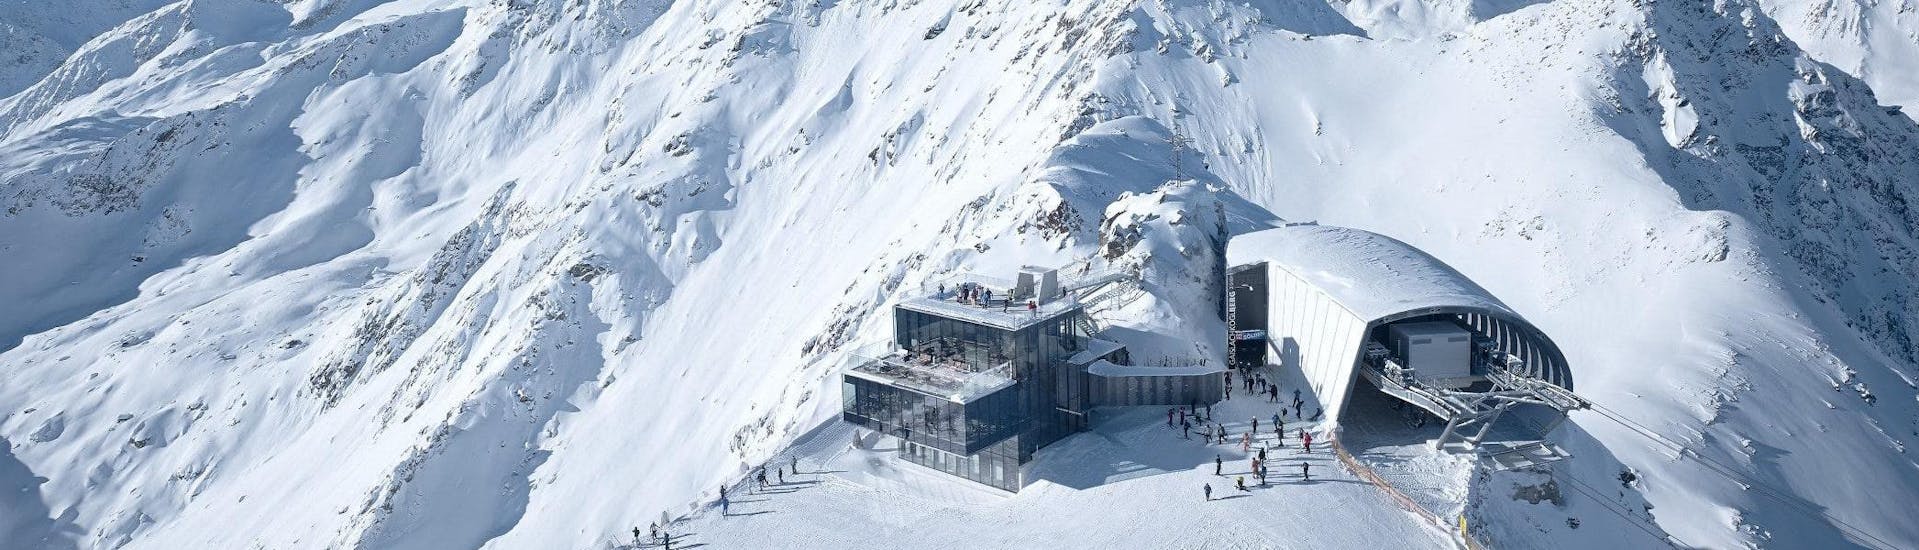 Blick auf die Bergstation der Gaislachkoglbahn im Skigebiet Sölden, wo die örtlichen Skischulen eine Bandbreite an Skikursen anbieten.